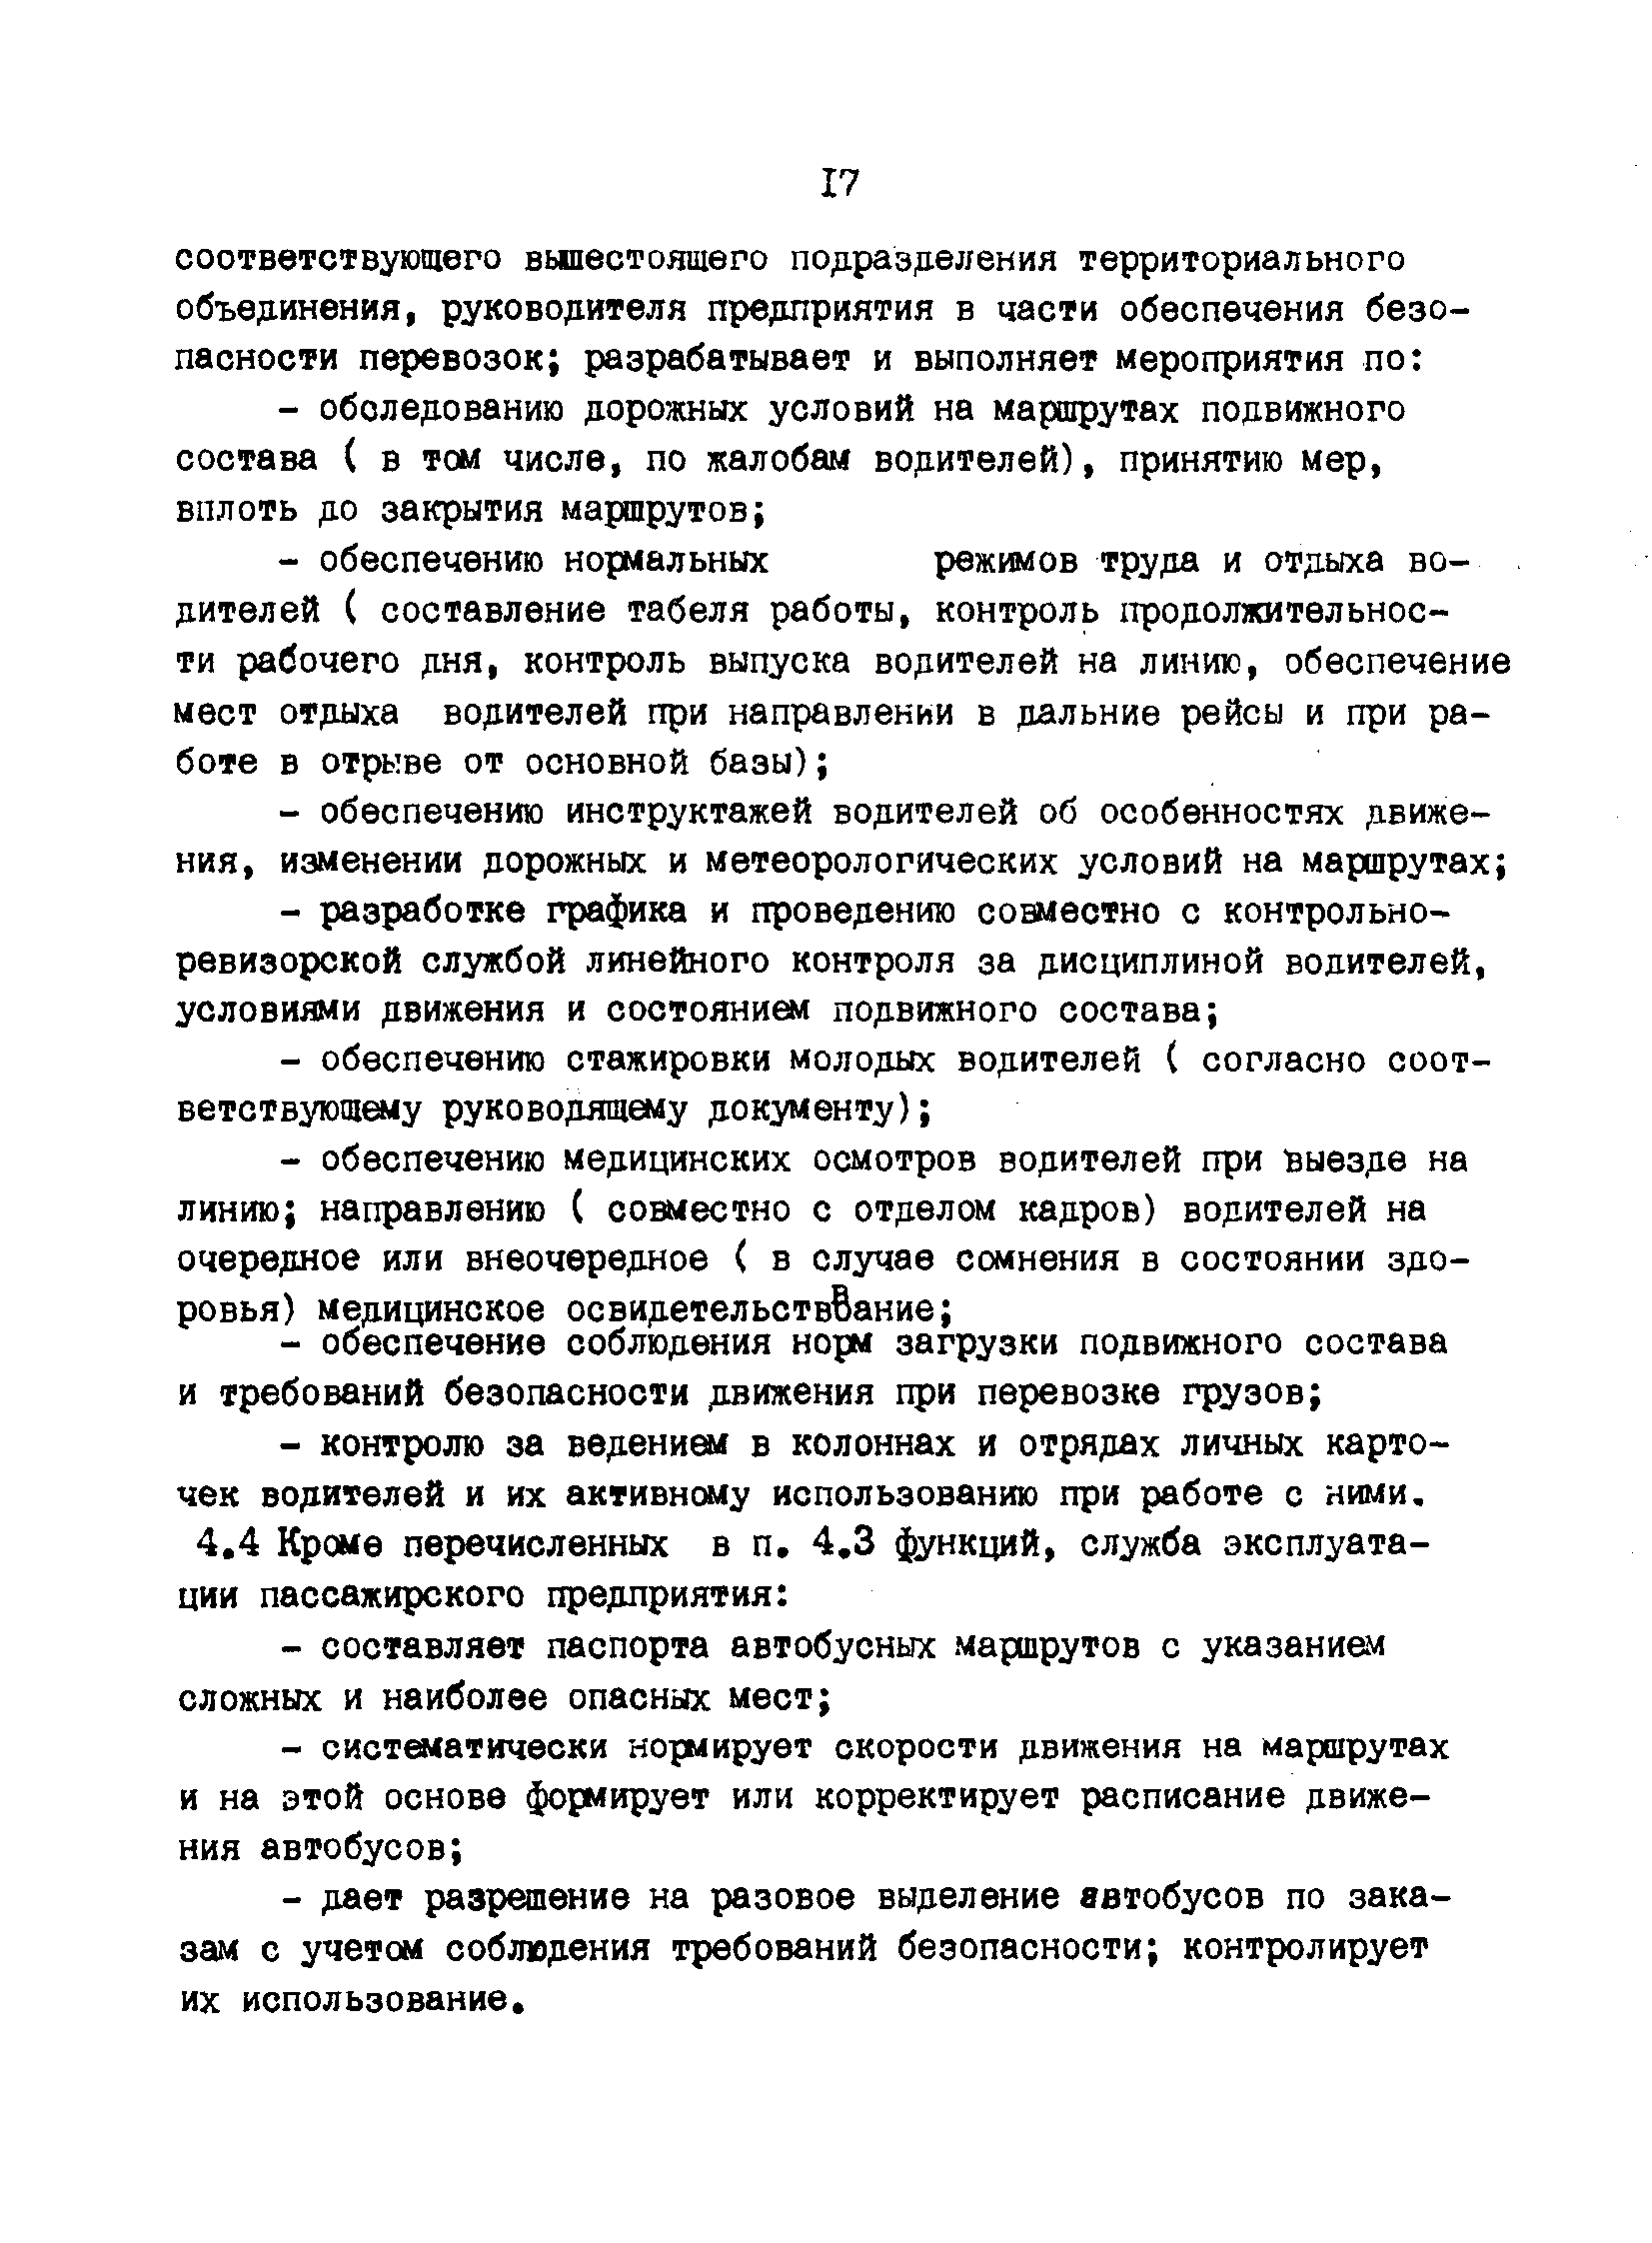 РД 200-РСФСР-12-0071-86-02